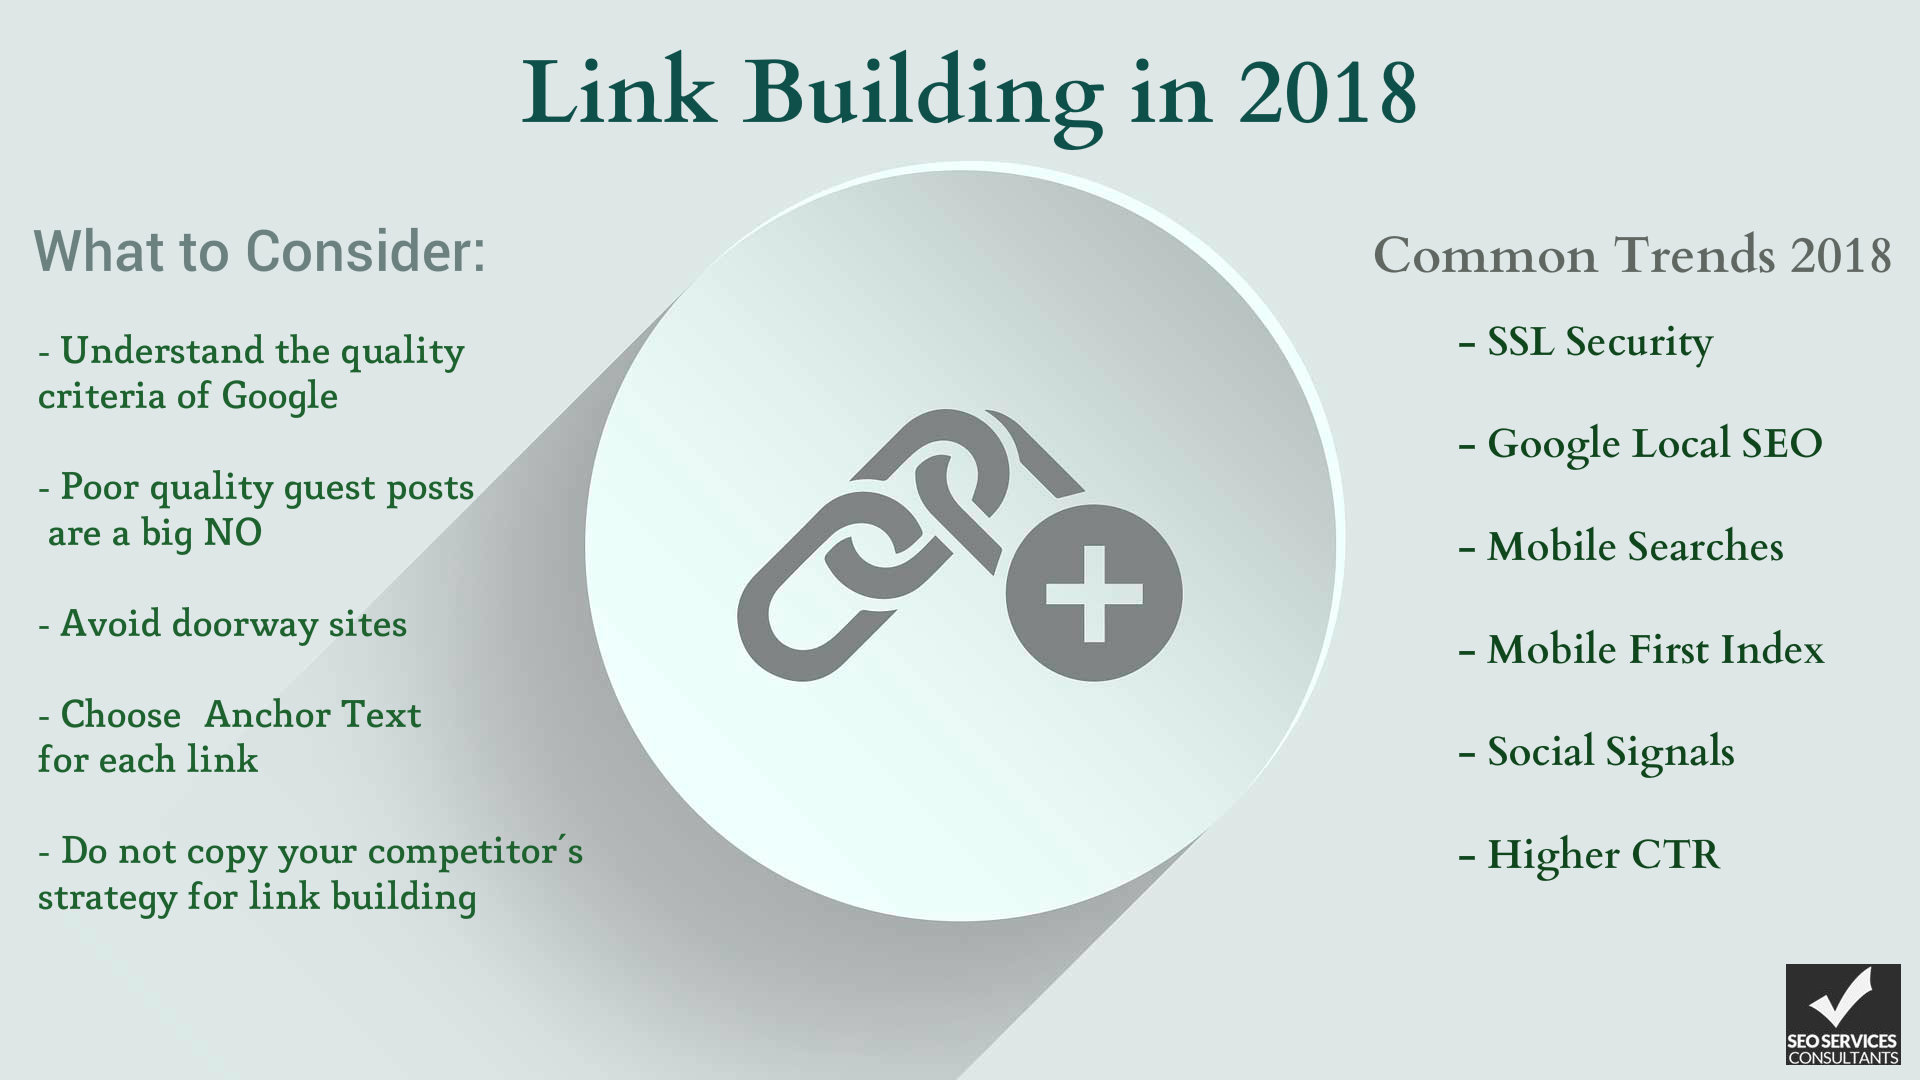 2018 Link Building Trends